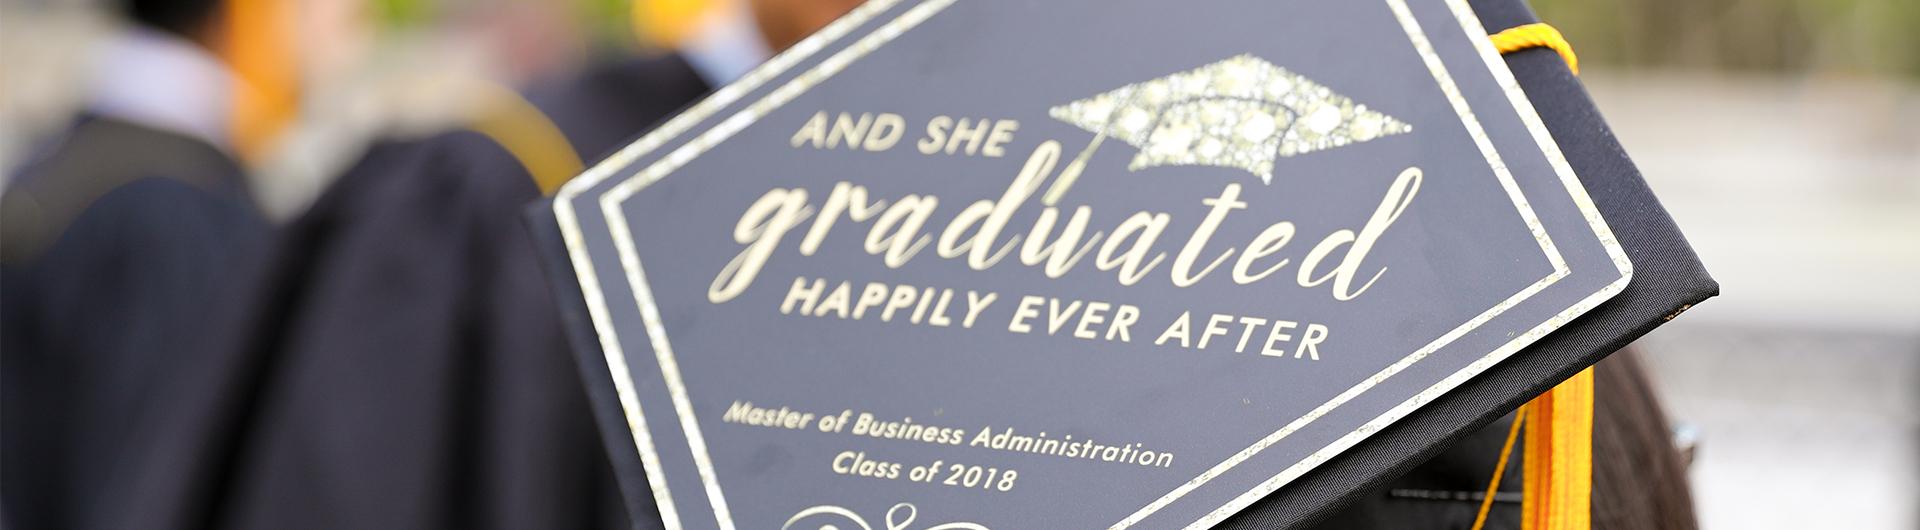 2018 Commencement - Graduation Cap